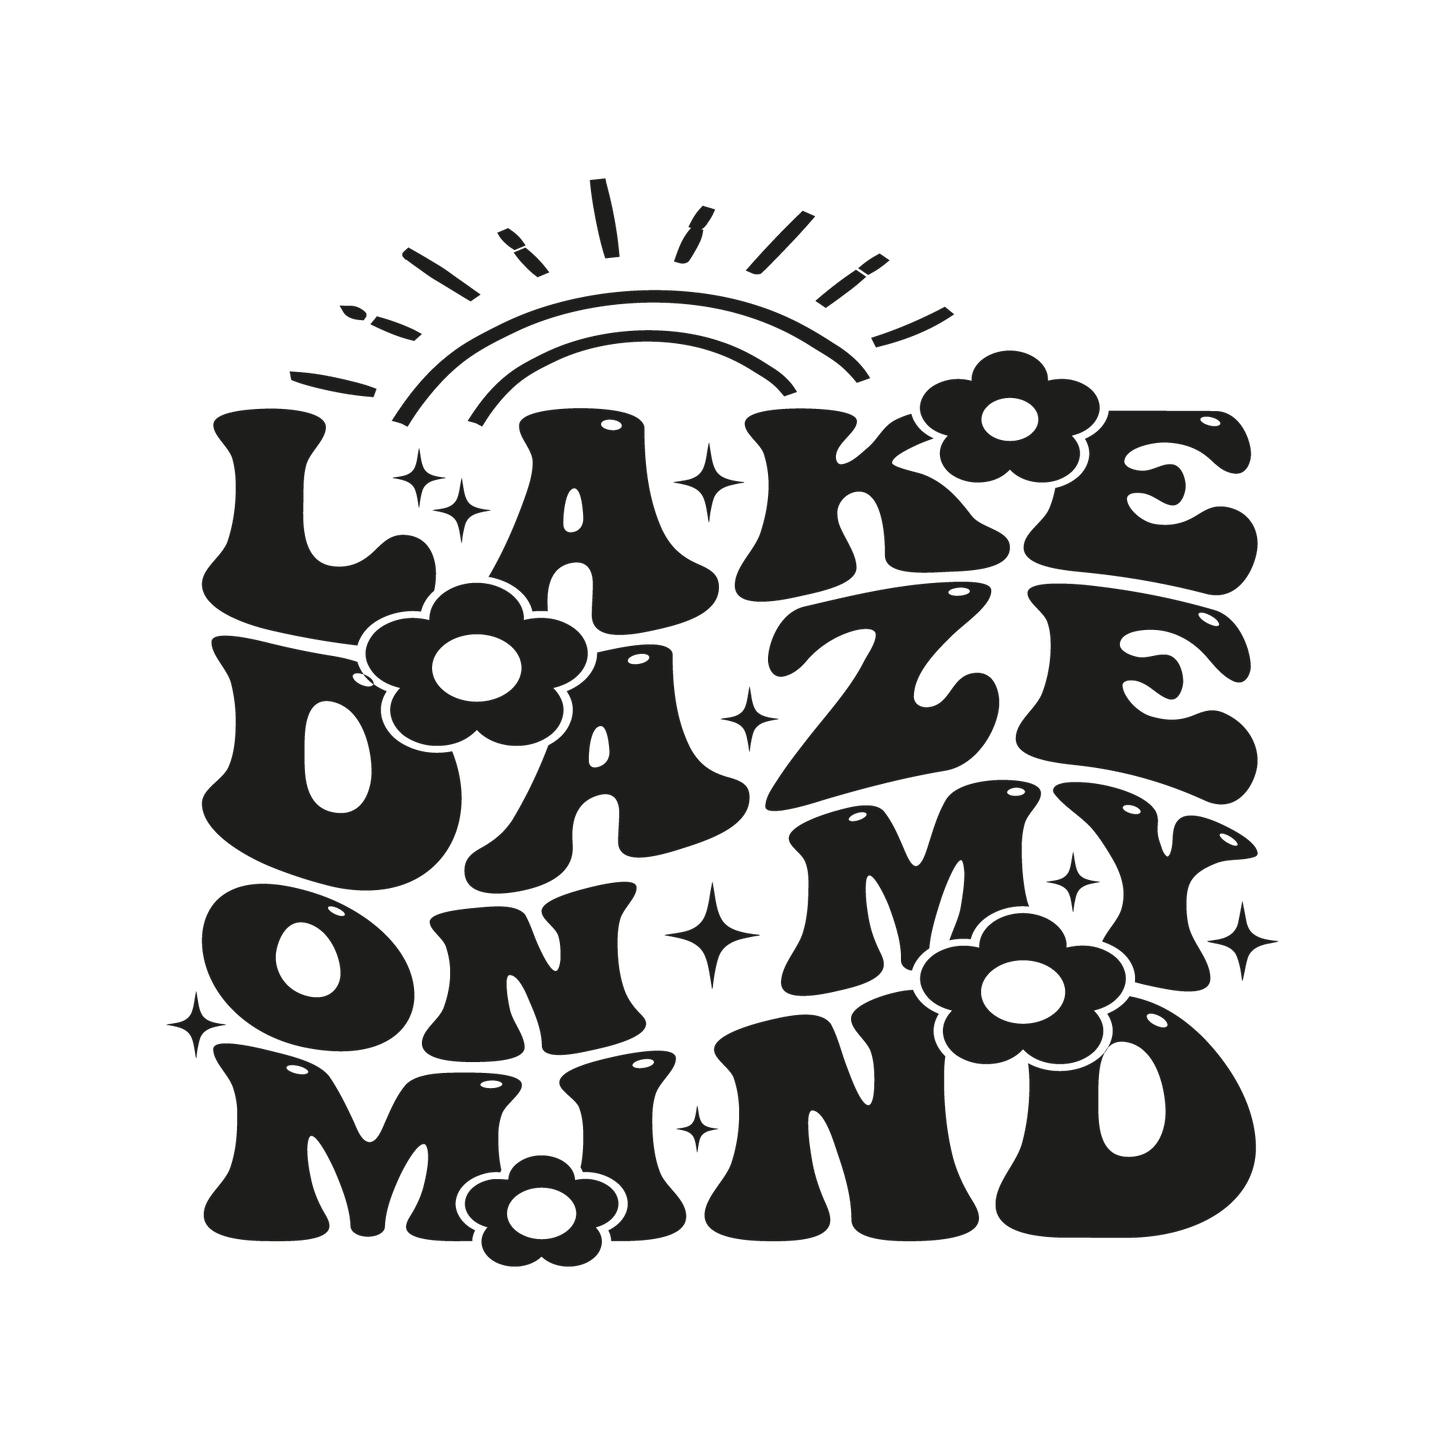 Lake Daze on my mind